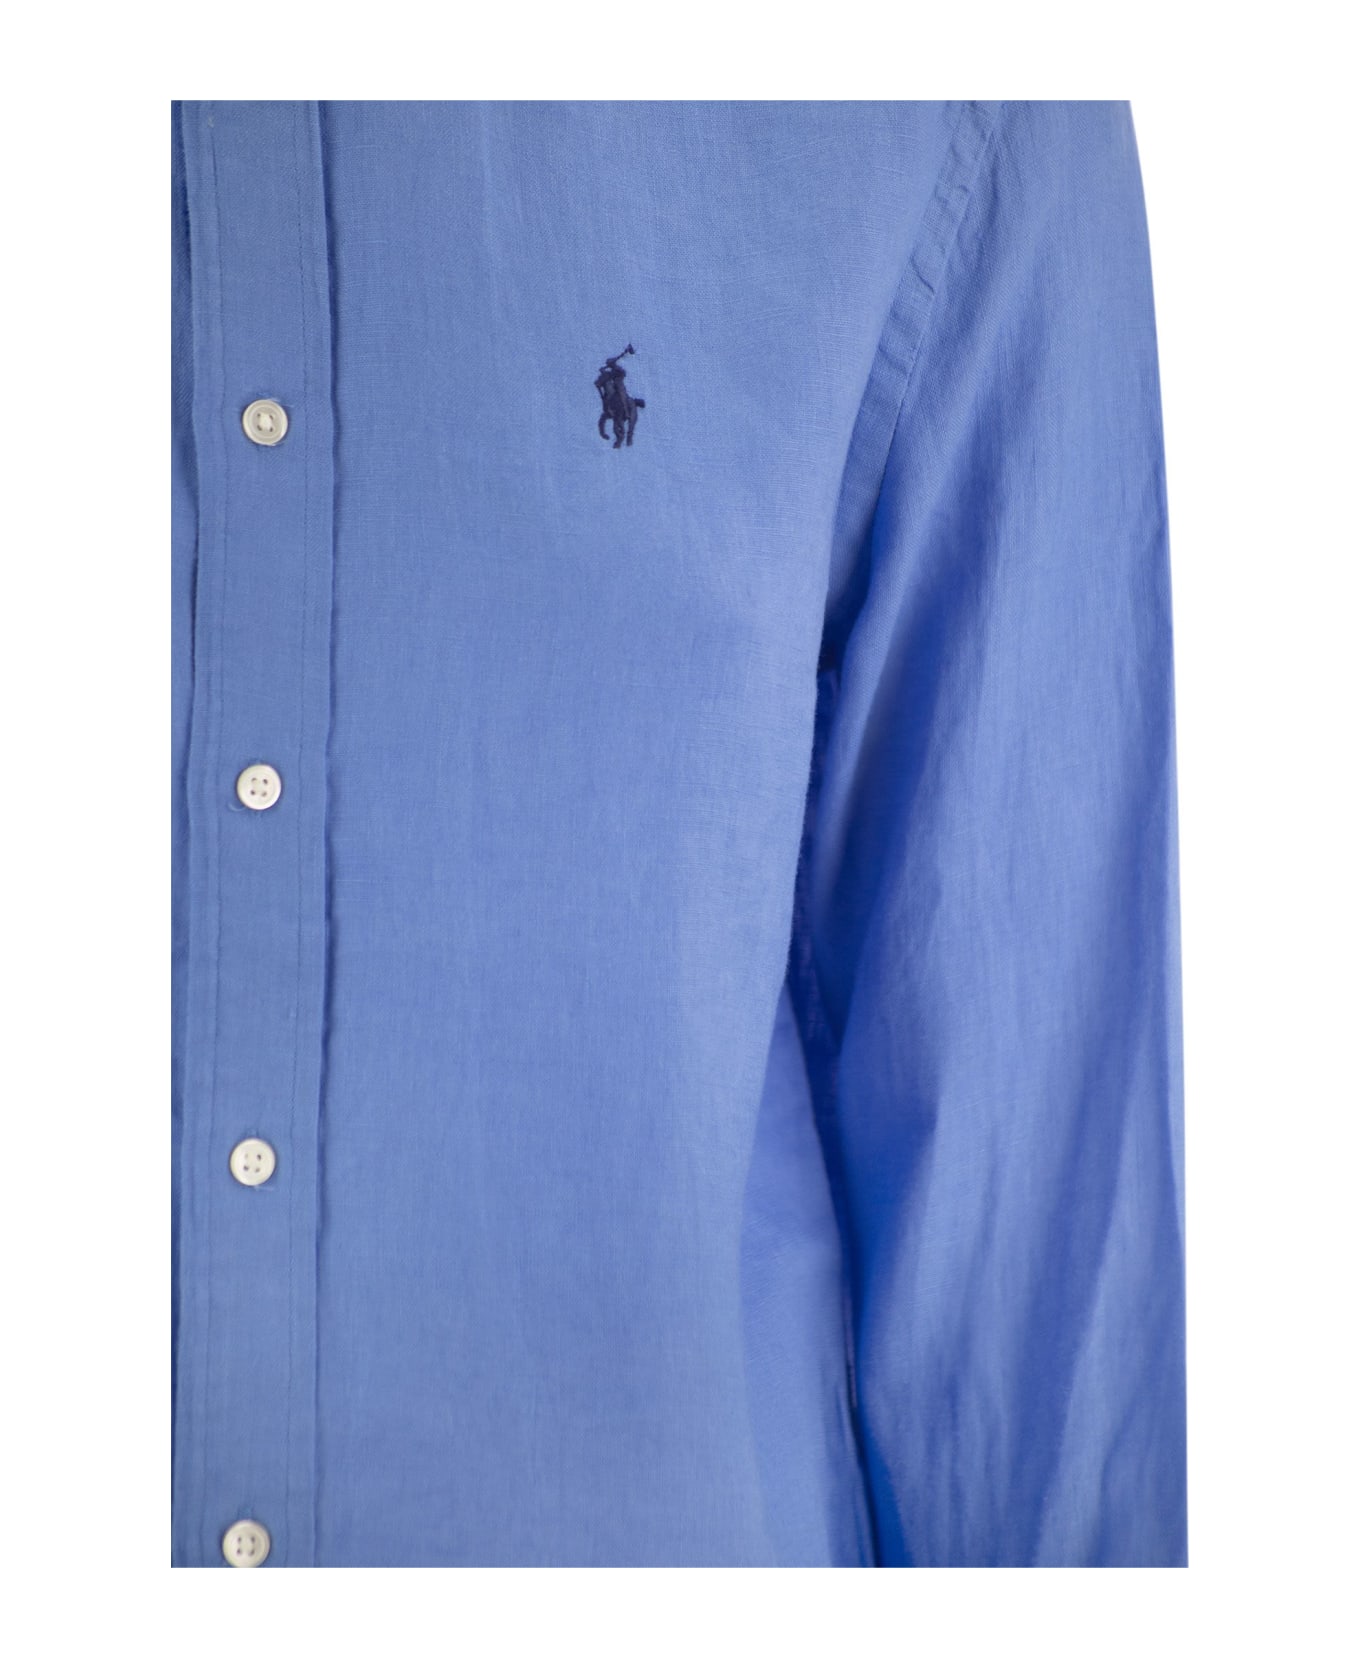 Polo Ralph Lauren Linen Shirt - Light Blue シャツ